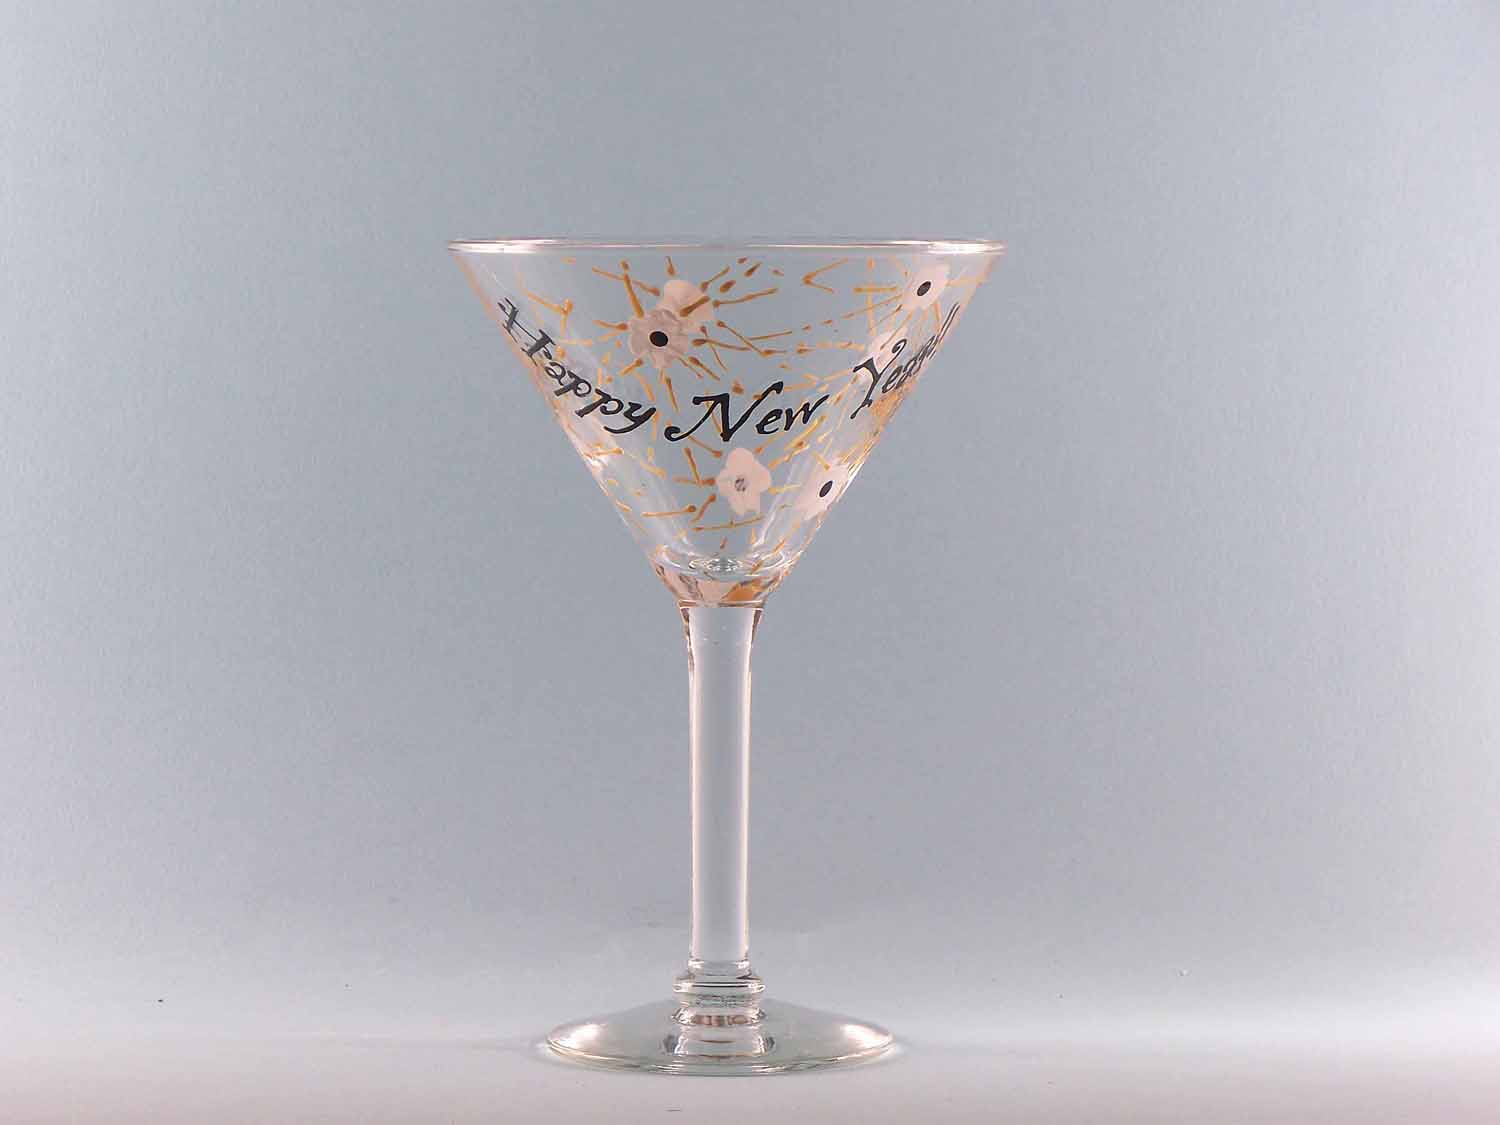 Personalized Martini Glasses